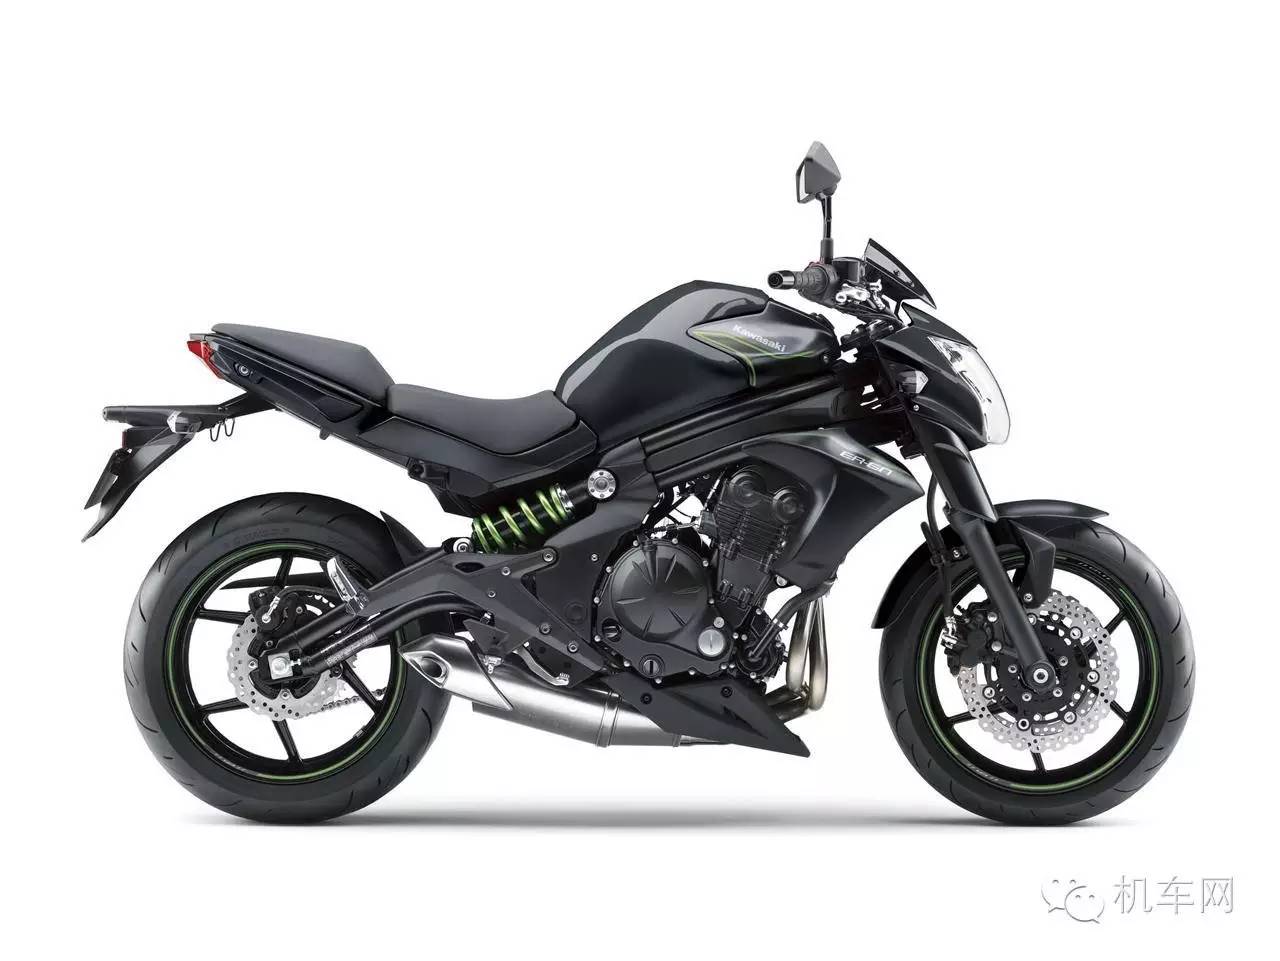                         光阳KYMCO将生产600cc大排摩托车?